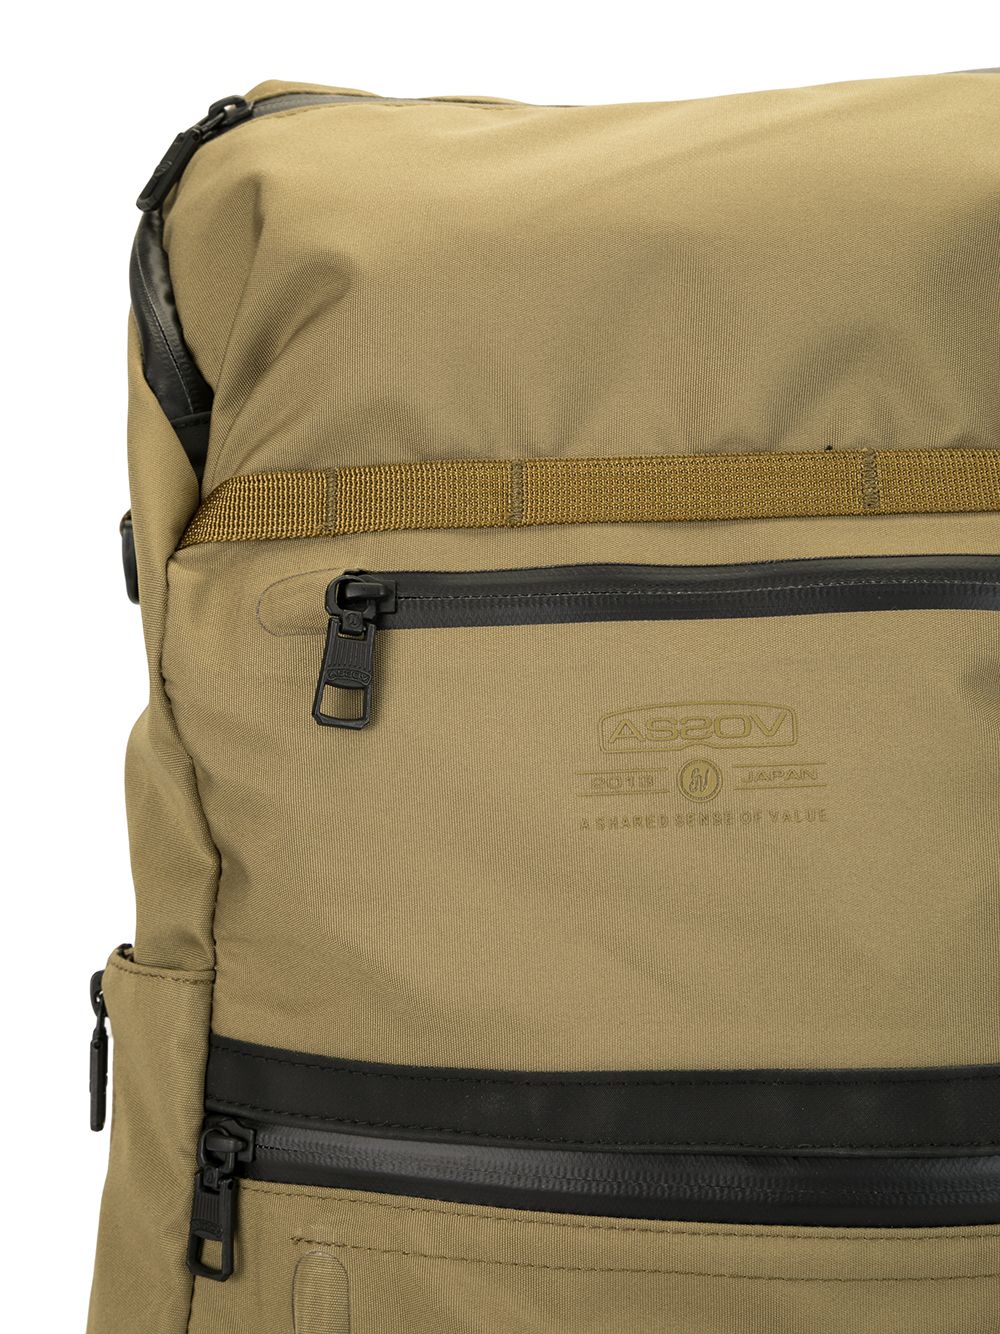 Shop As2ov Cordura Waterproof Backpack In Brown